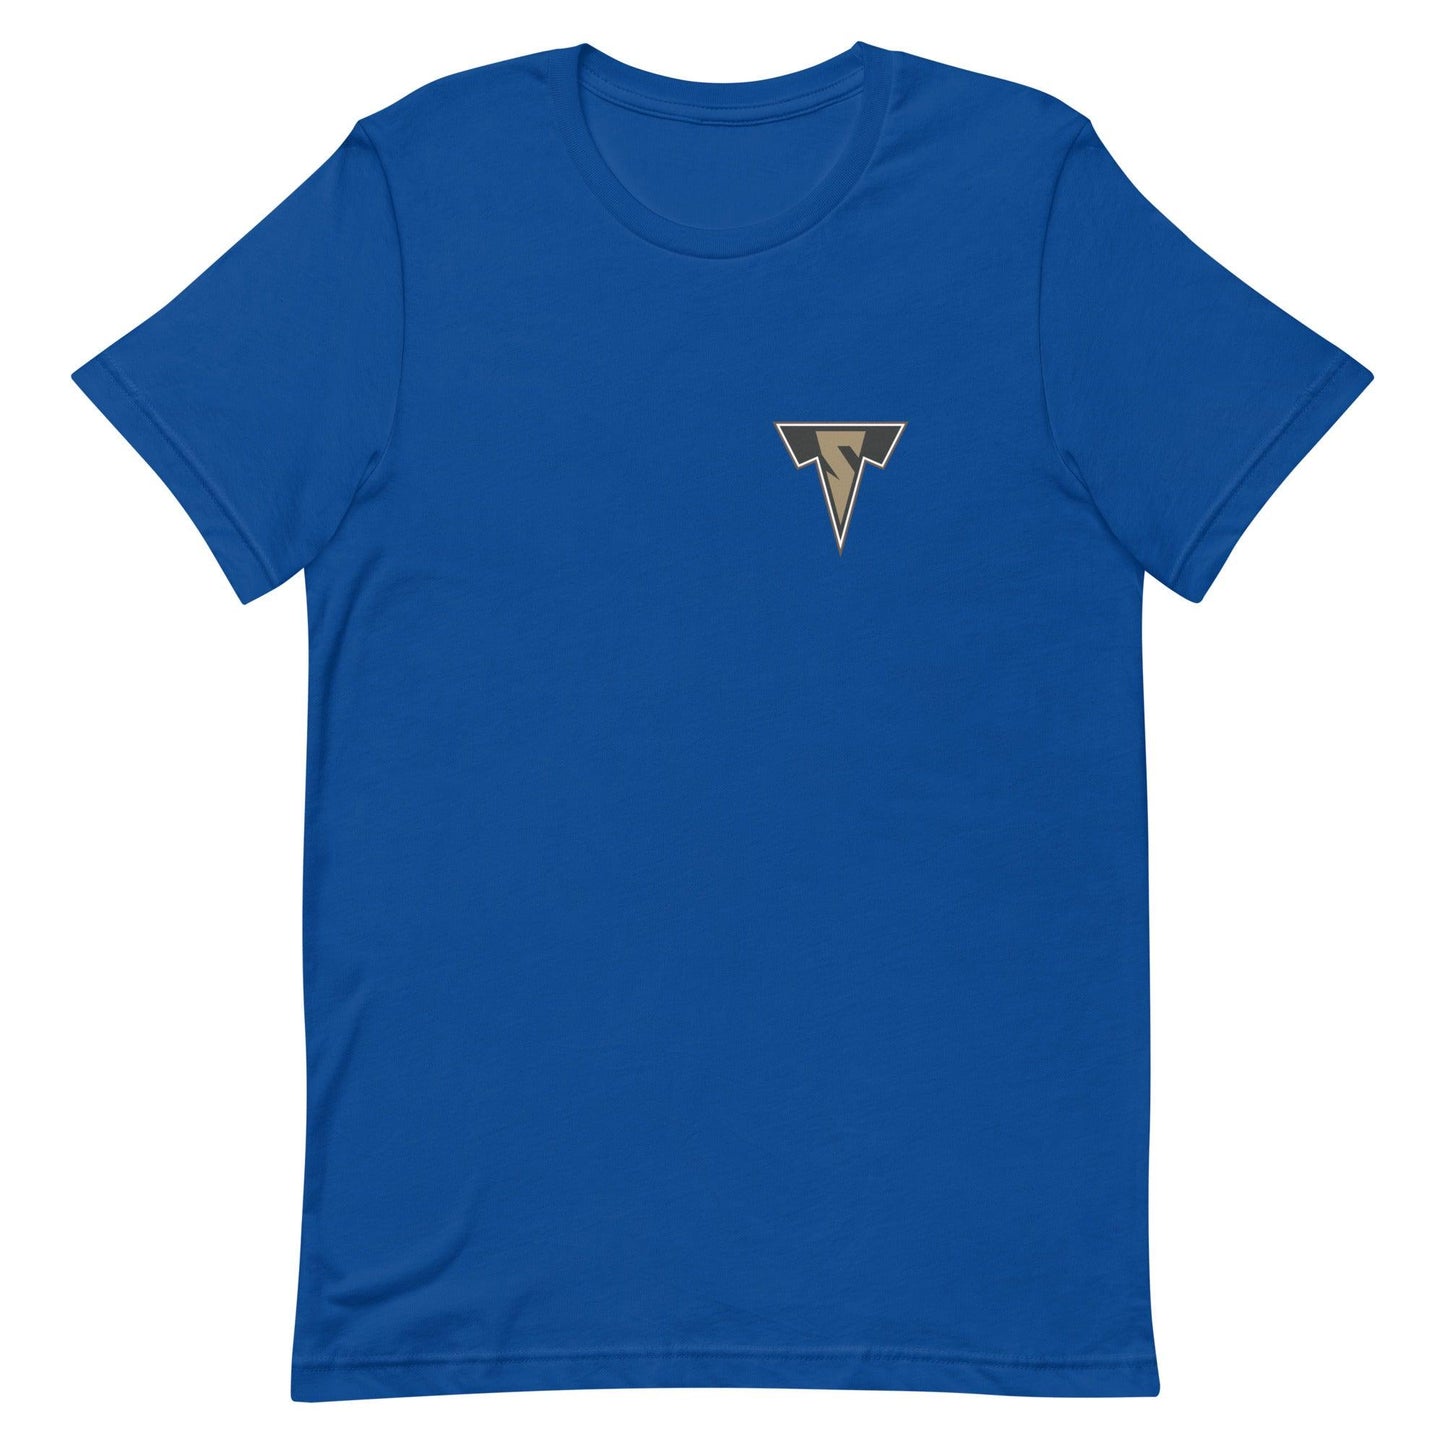 Sean Tyler "Elite" t-shirt - Fan Arch